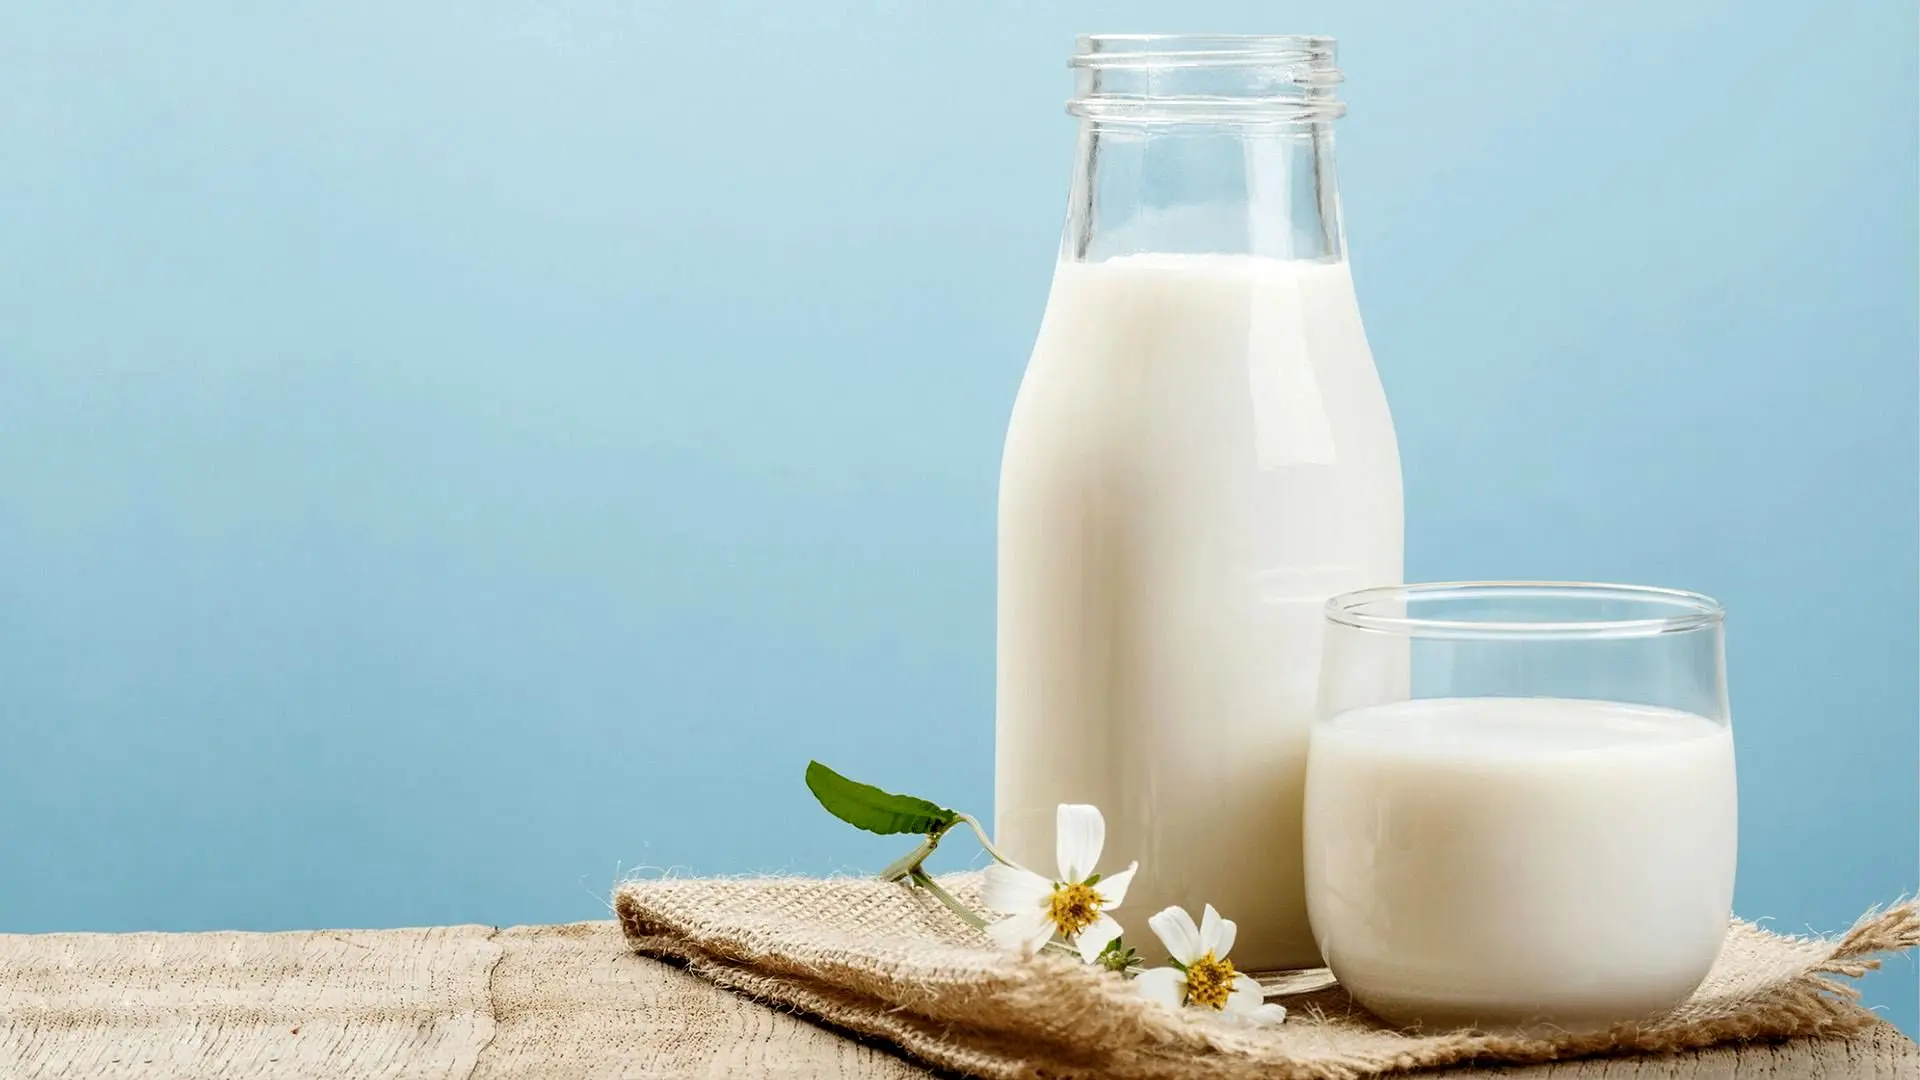 جوشاندن شیر مفید است یا مضر؟